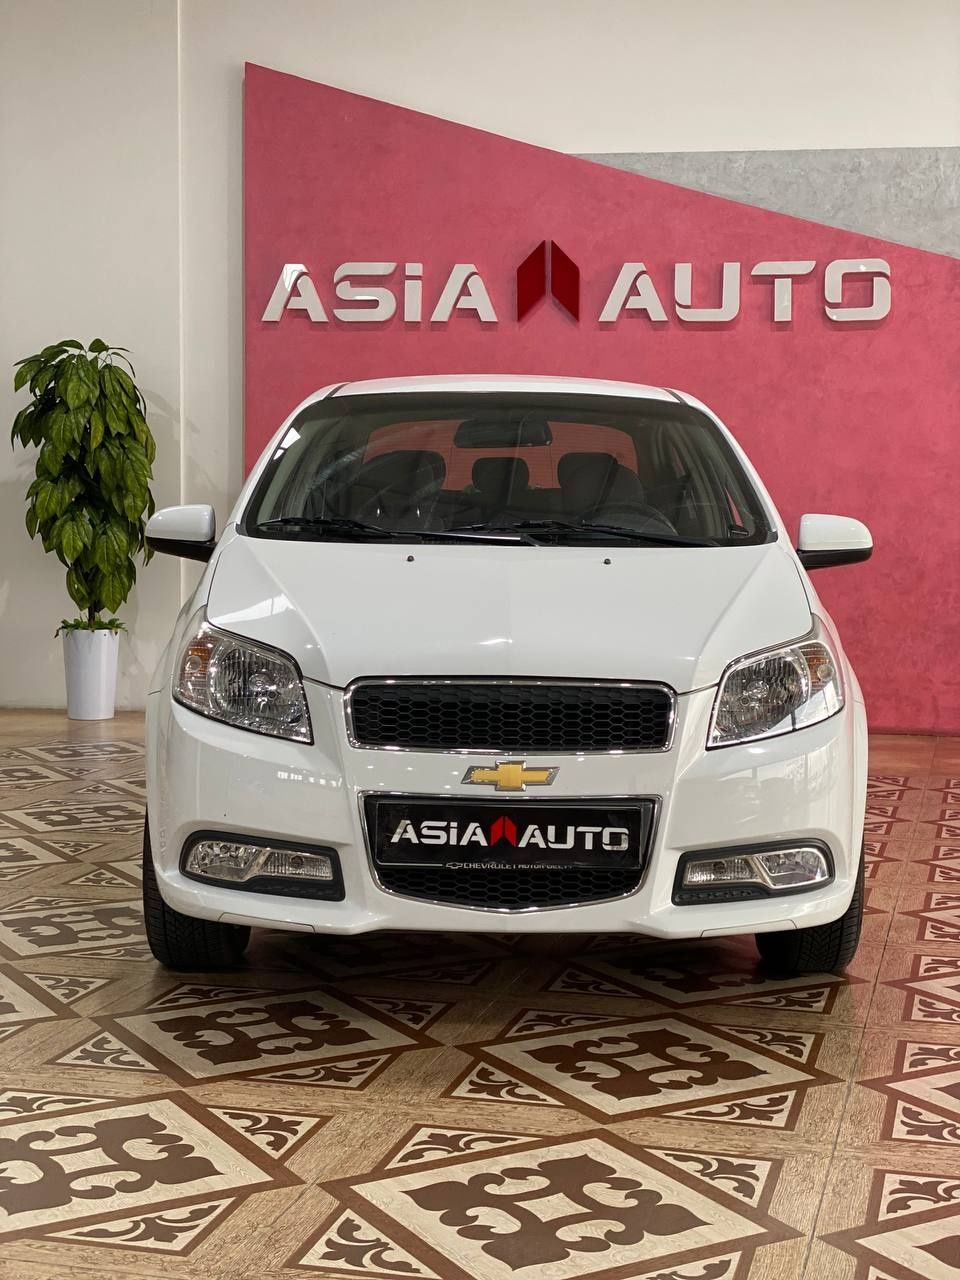 Asia Auto Nexa3 Avtomat